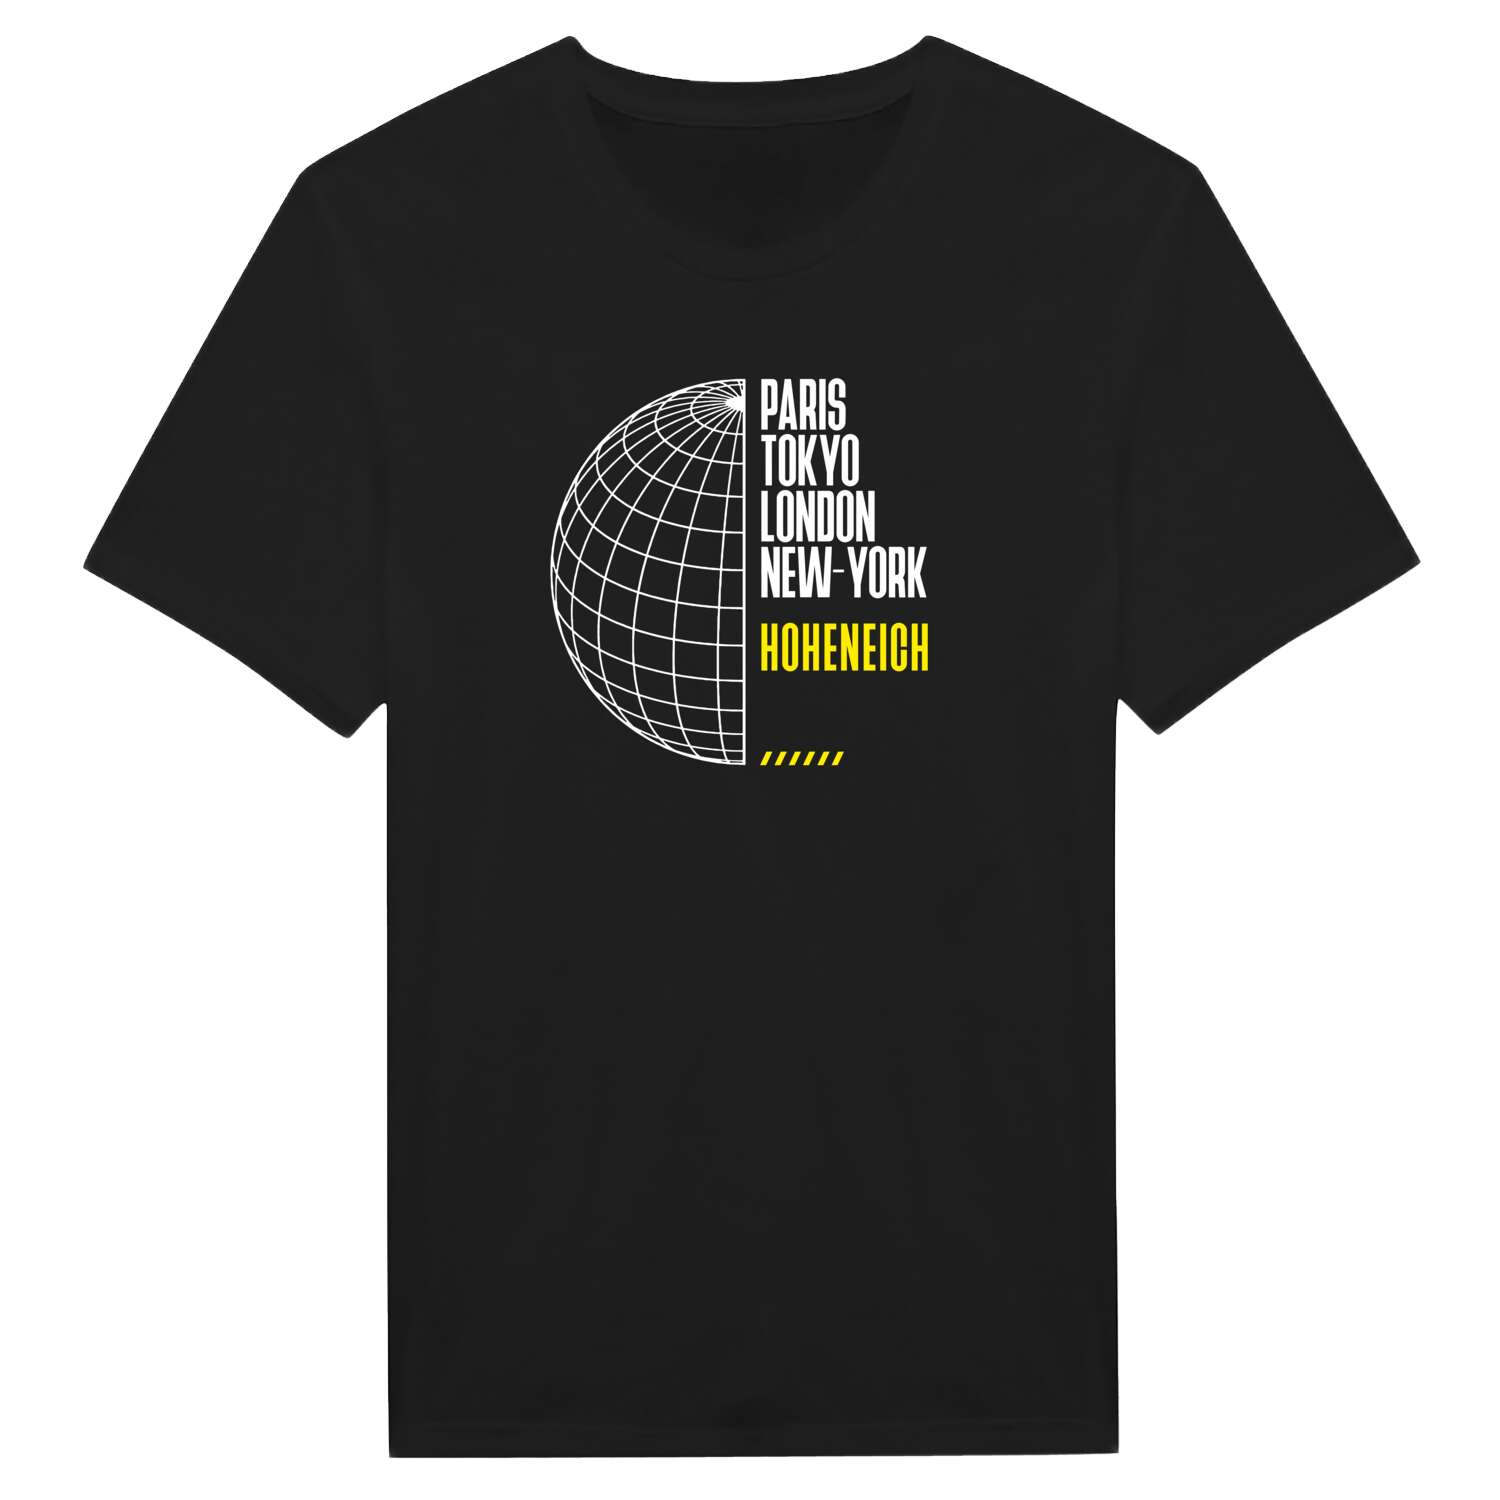 Hoheneich T-Shirt »Paris Tokyo London«